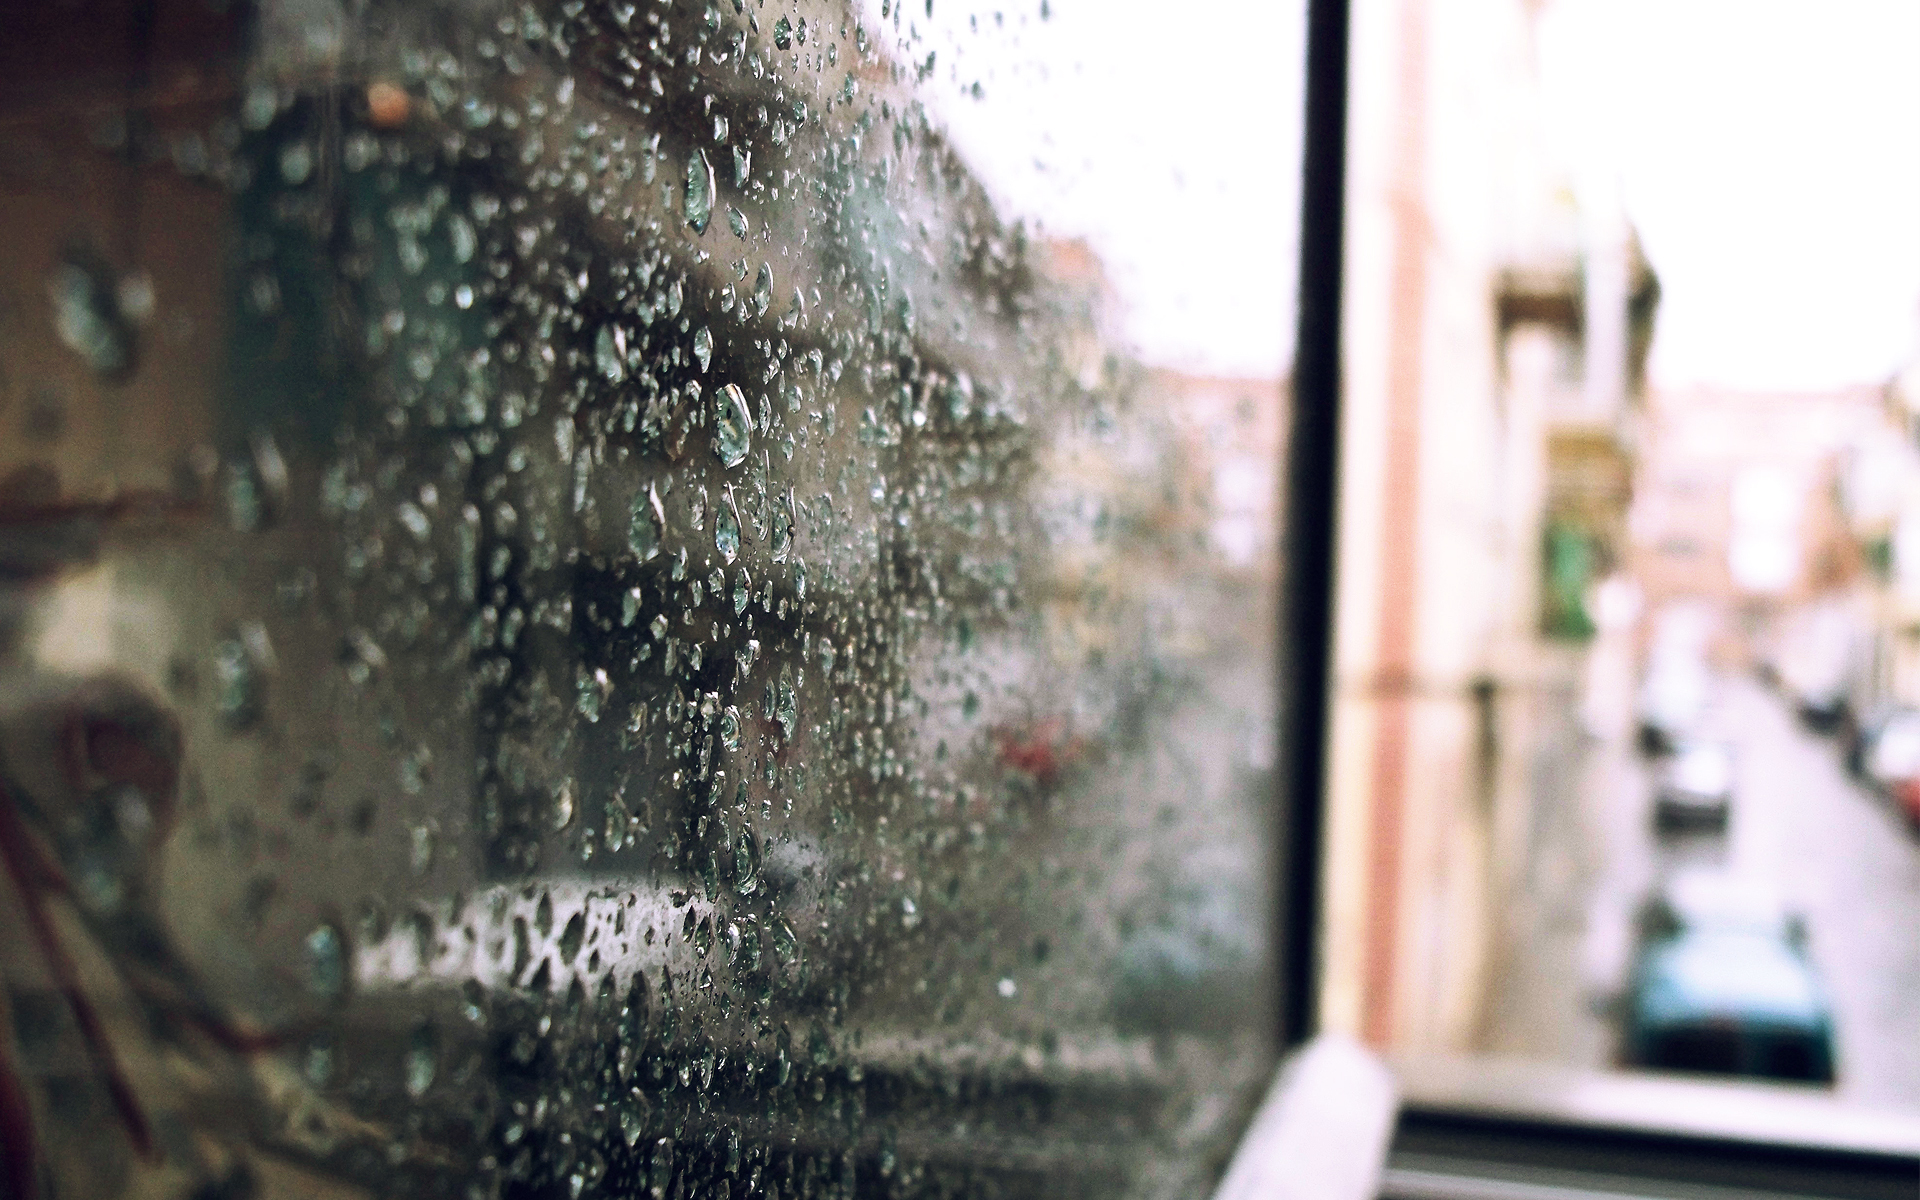 cars, balcony, bokeh, water drops, rain on glass - desktop wallpaper